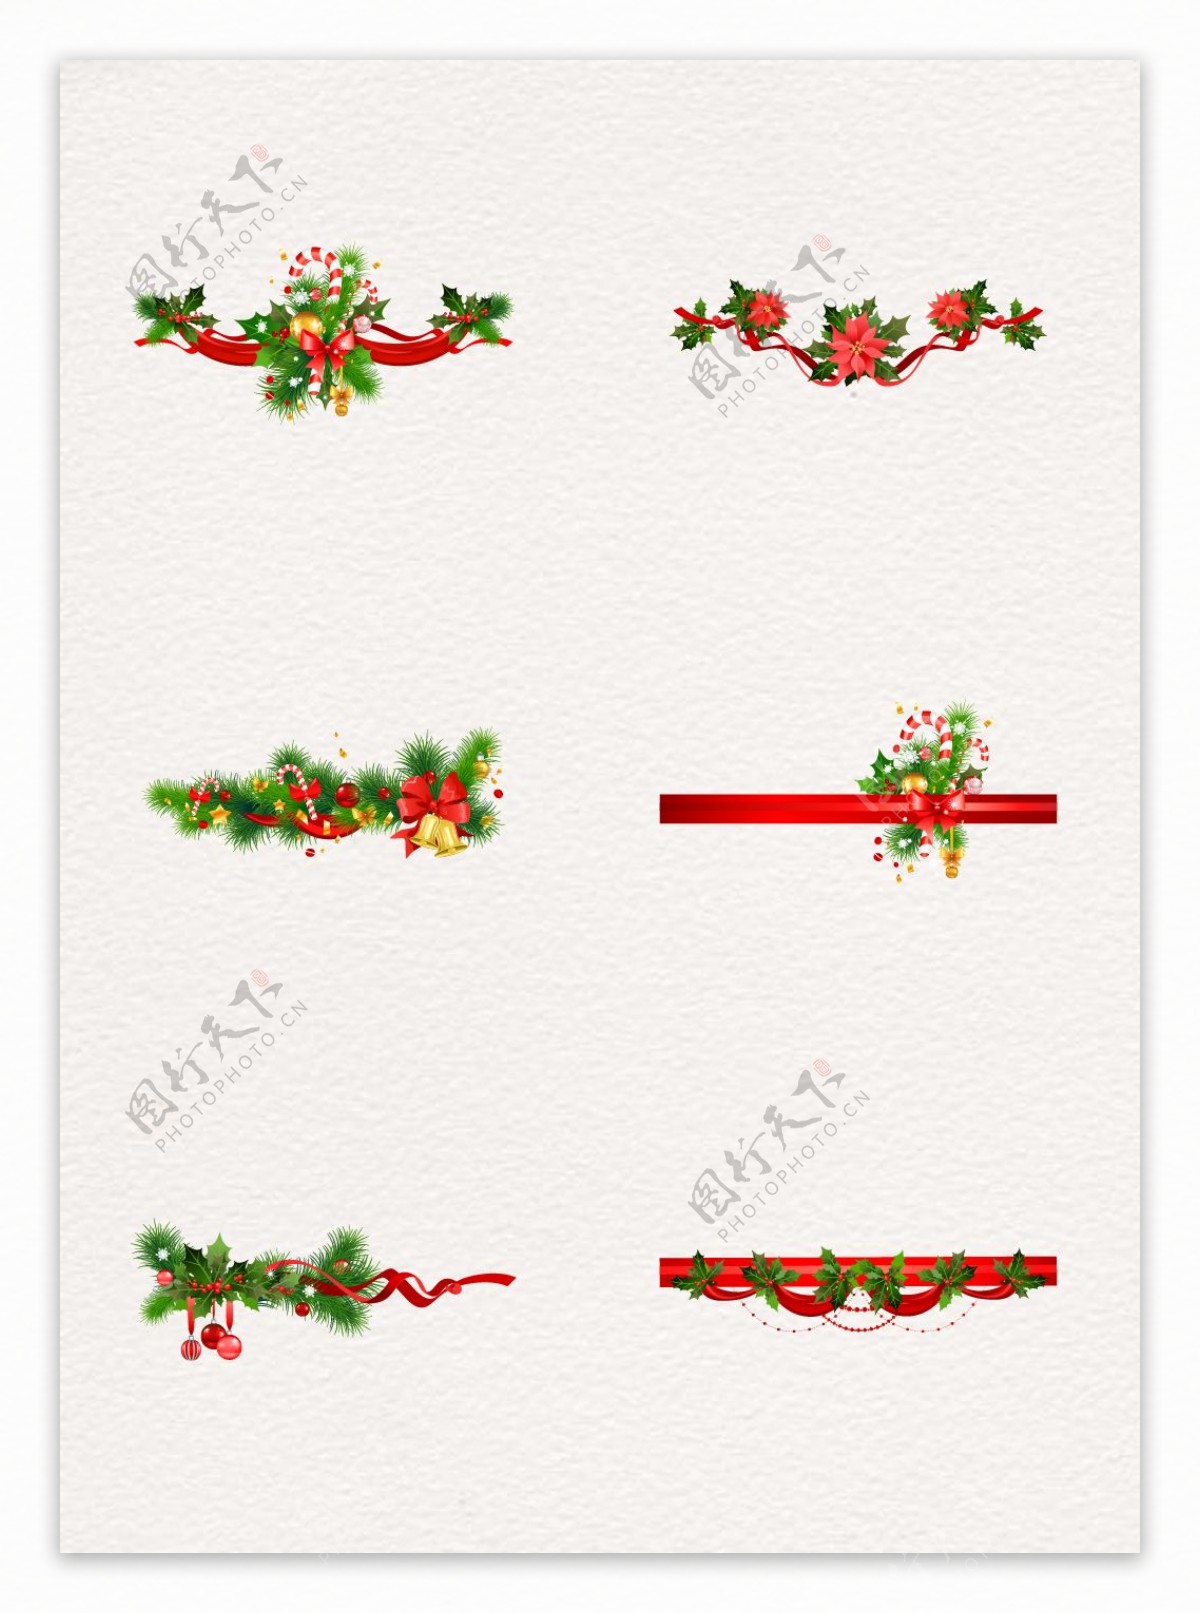 圣诞节铃铛与松枝手绘节日素材